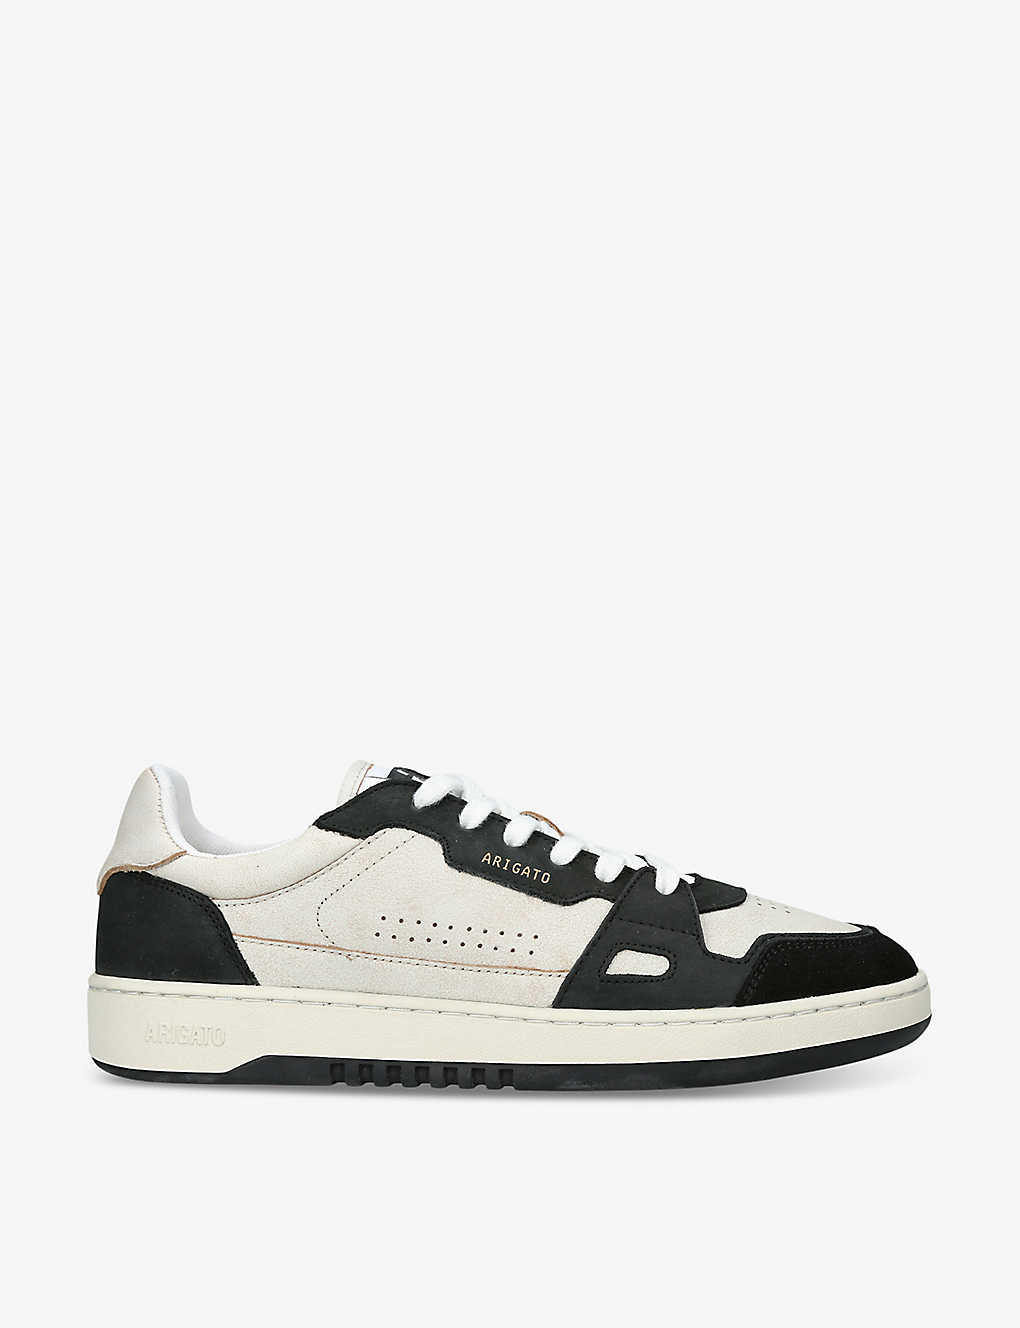 Axel Arigato Dice Lo Leather Sneaker In White